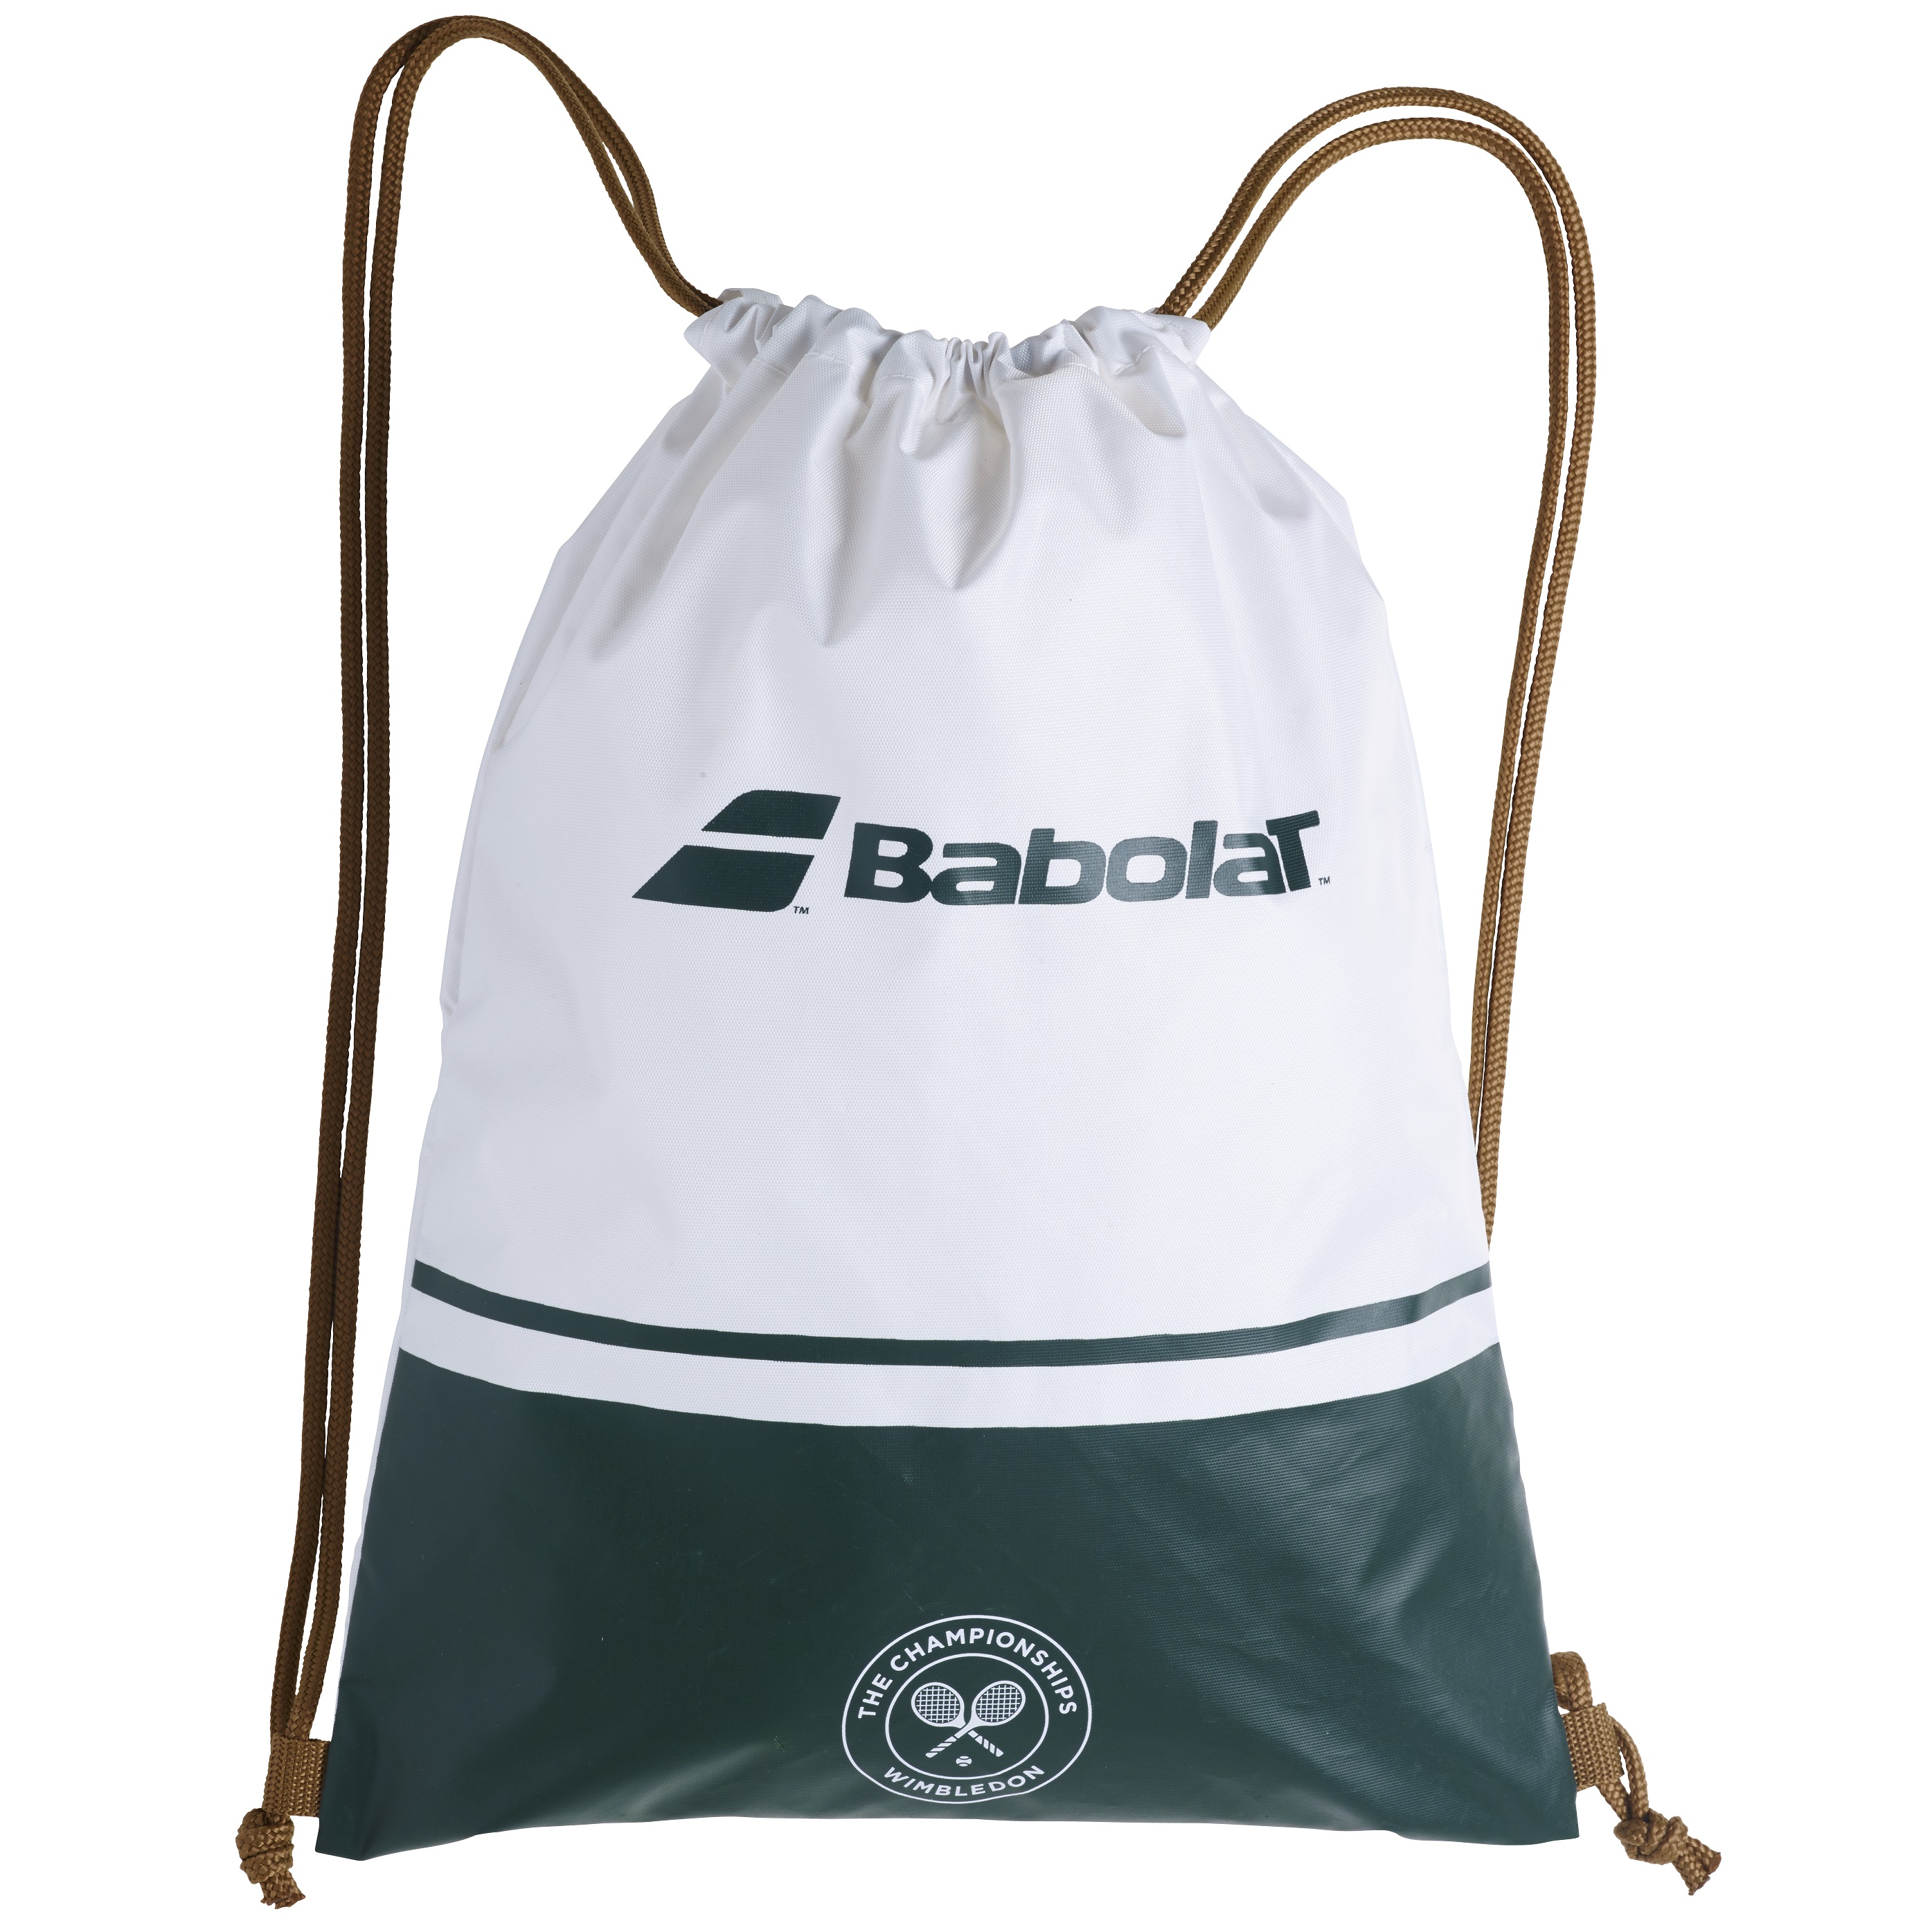 תיק בבולט Gym Bag Wimbledon Babolat